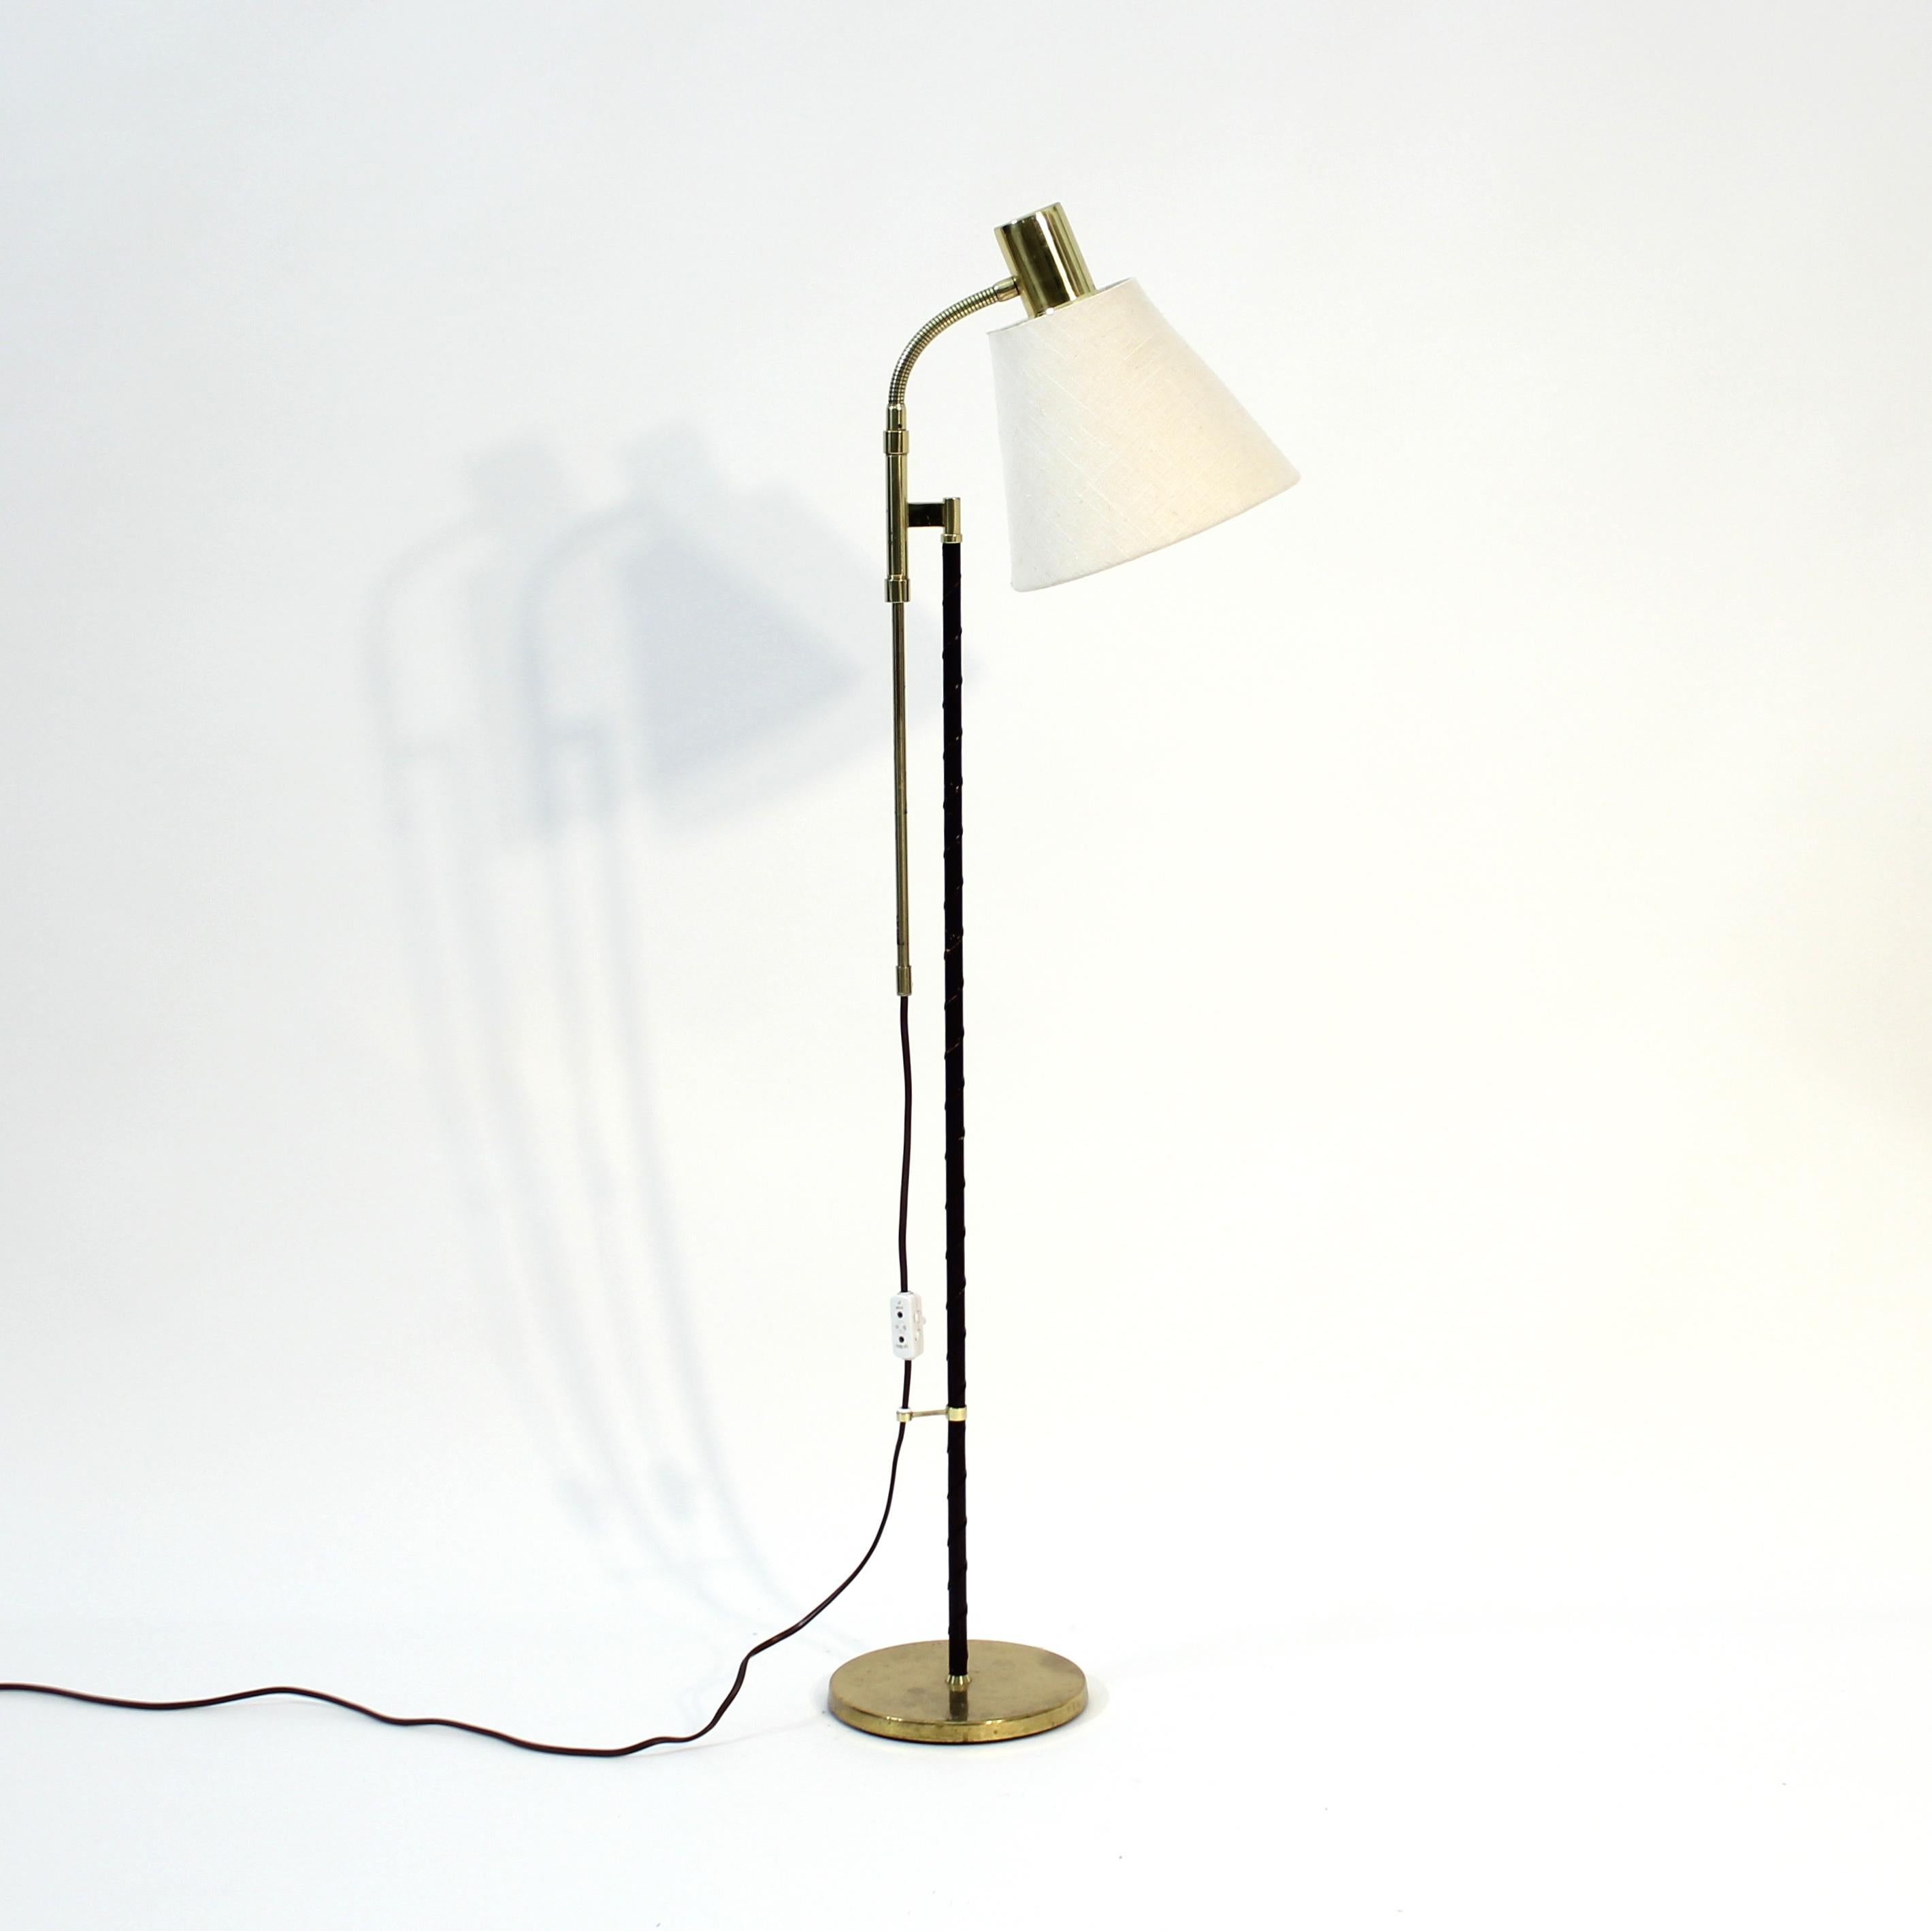 20th Century Swedish height adjustable floor lamp by MAE (Möller Armatur Eskilstuna), 1960s For Sale